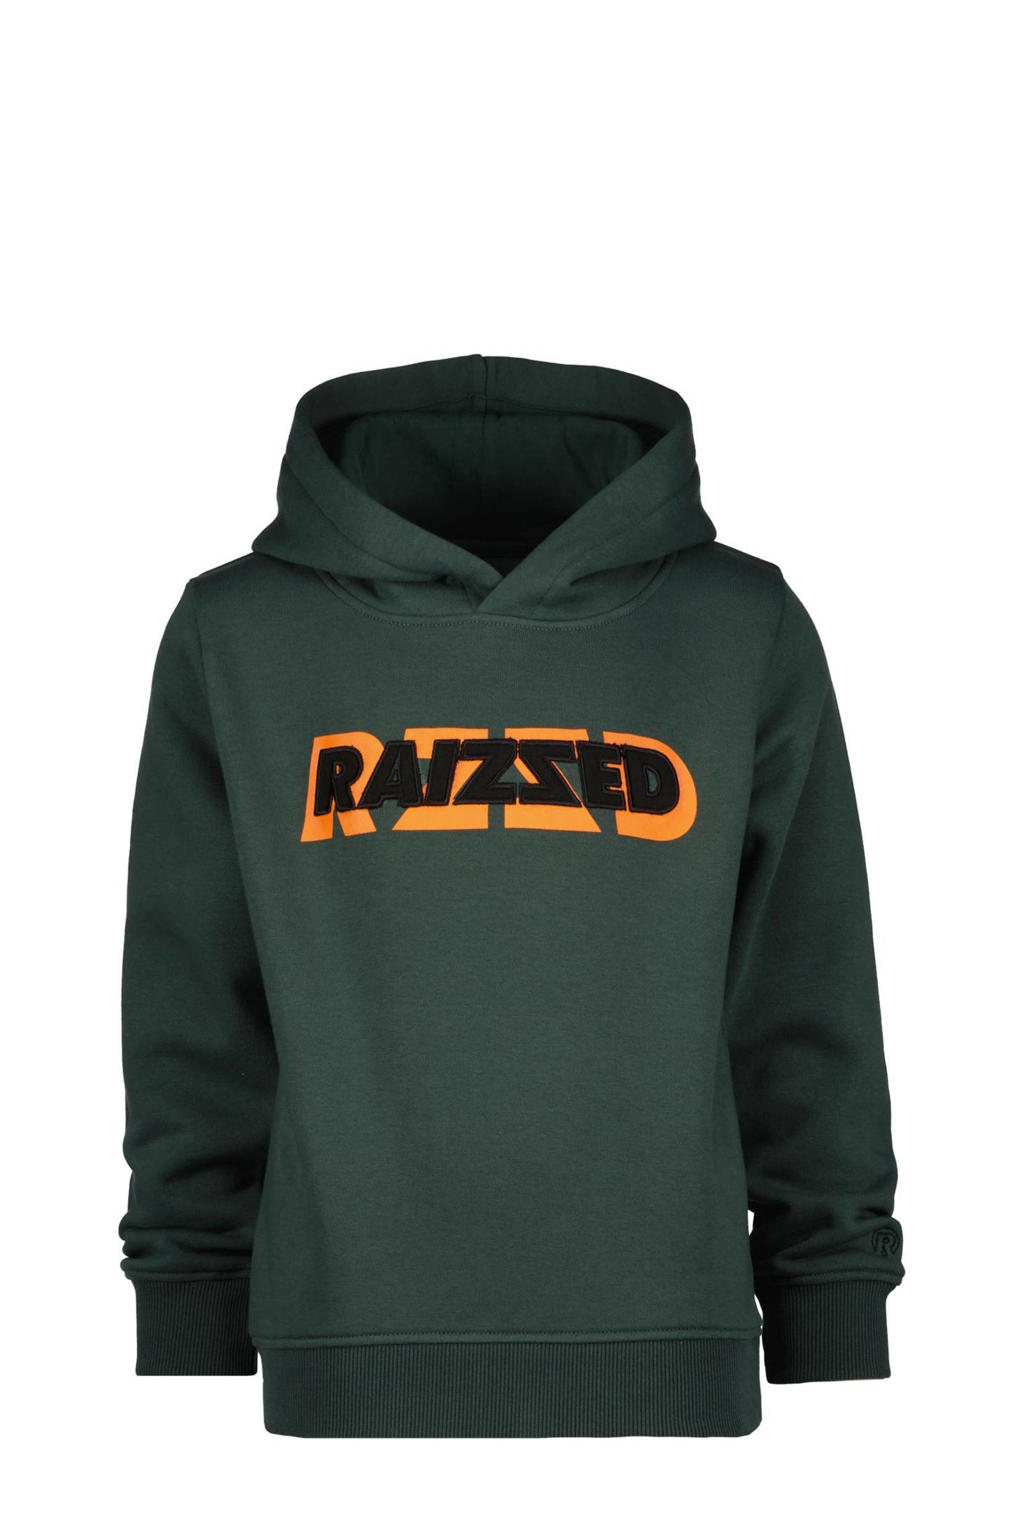 Raizzed hoodie Wilkes met logo donkergroen